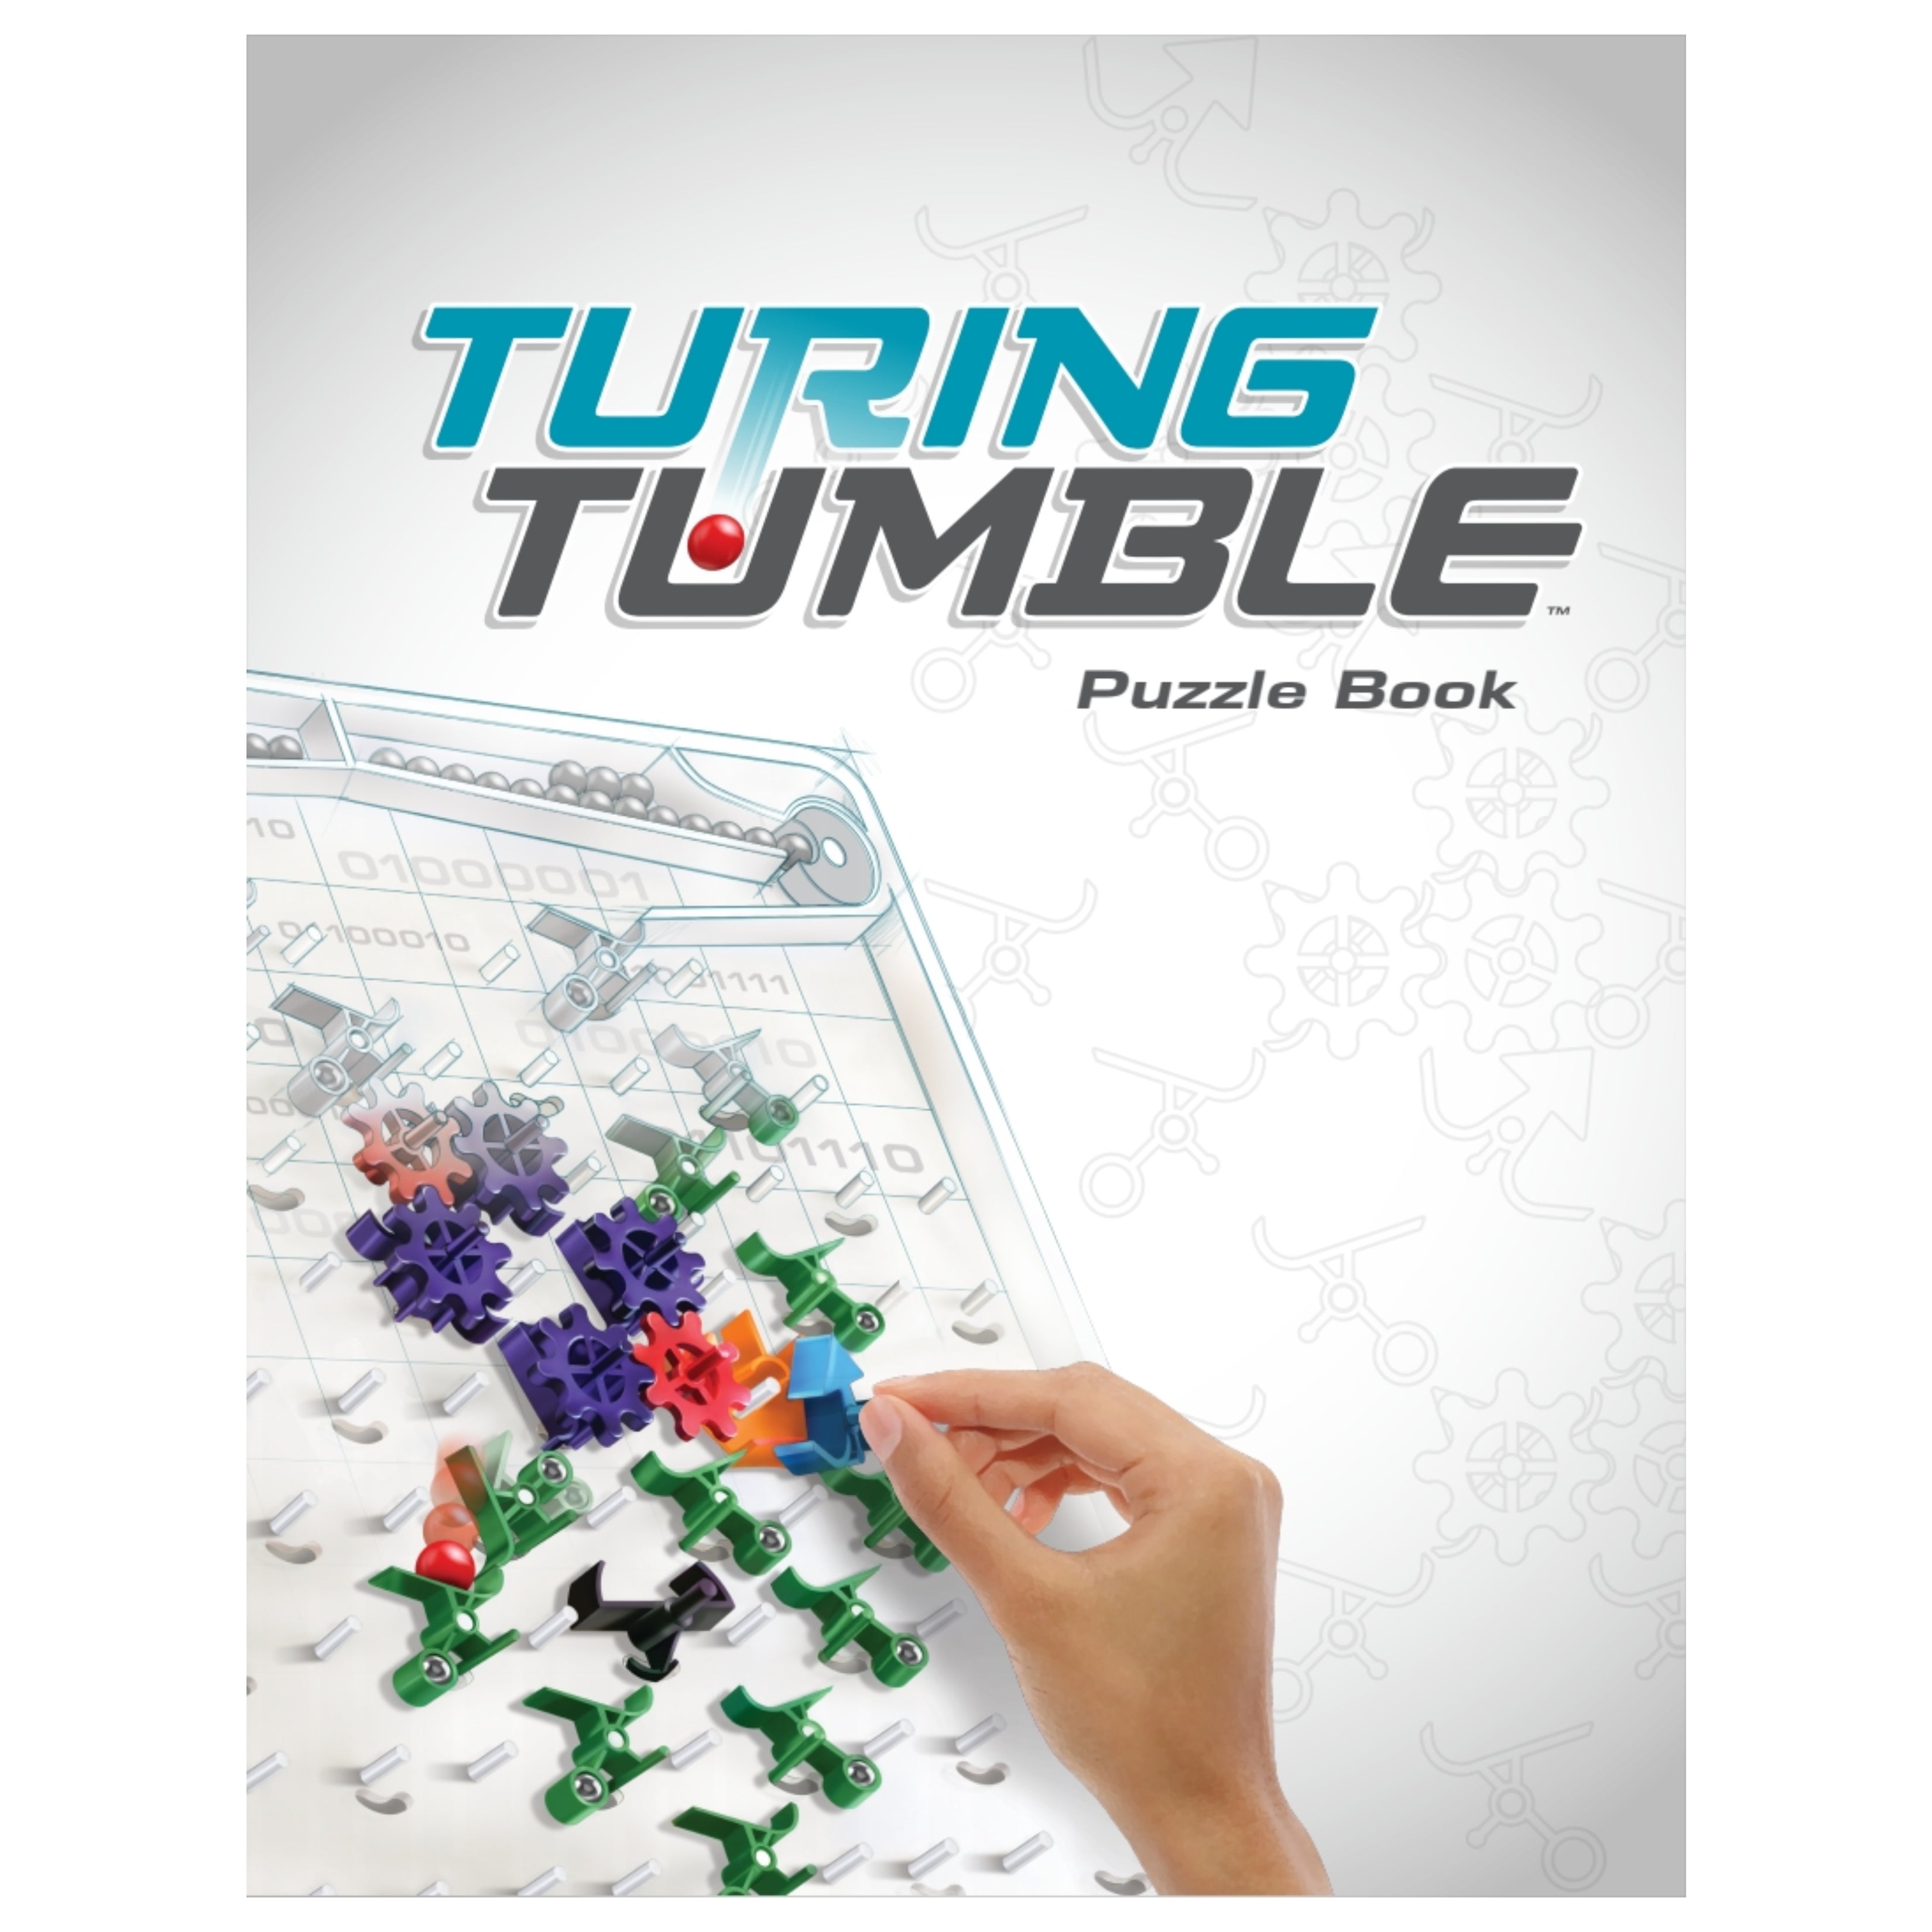 Turing Tumble Kickstarter/Turing Tumble Kickstarter Edition – PNL